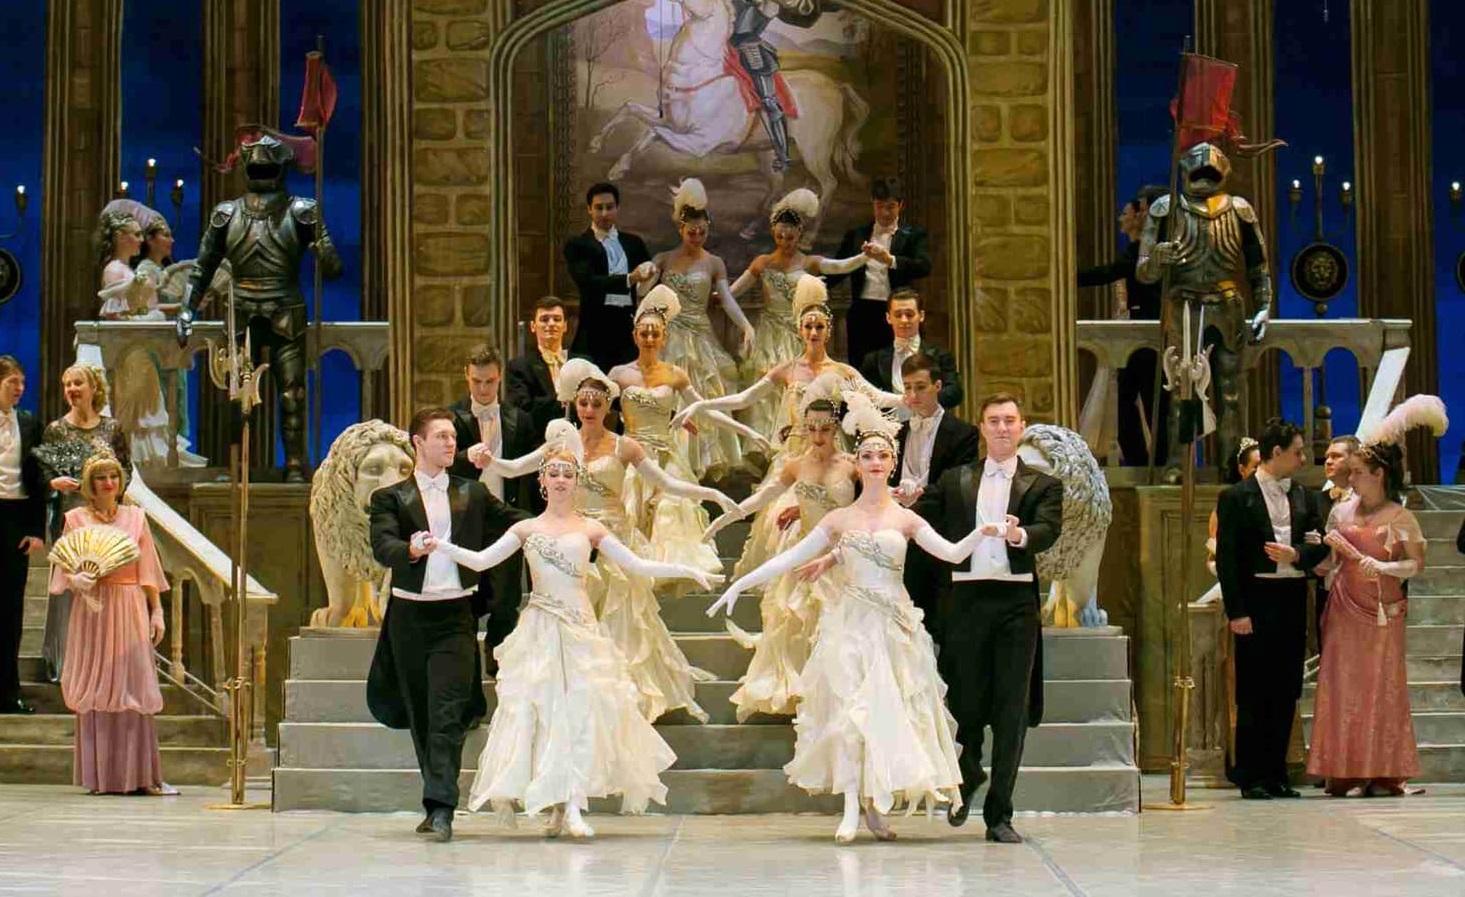 Музыкальный театр Краснодар. ФОТО%20ЗАЛА%20 ОПЕРЕТТЫ%20В%20МОСКВЕ. Королева чардаша театр оперетты отзывы. МОСКВА%20 ТЕАТР%20 ОПЕРЕТТЫ%20 ОСНОВНАЯ%20 С ЦЕНА.